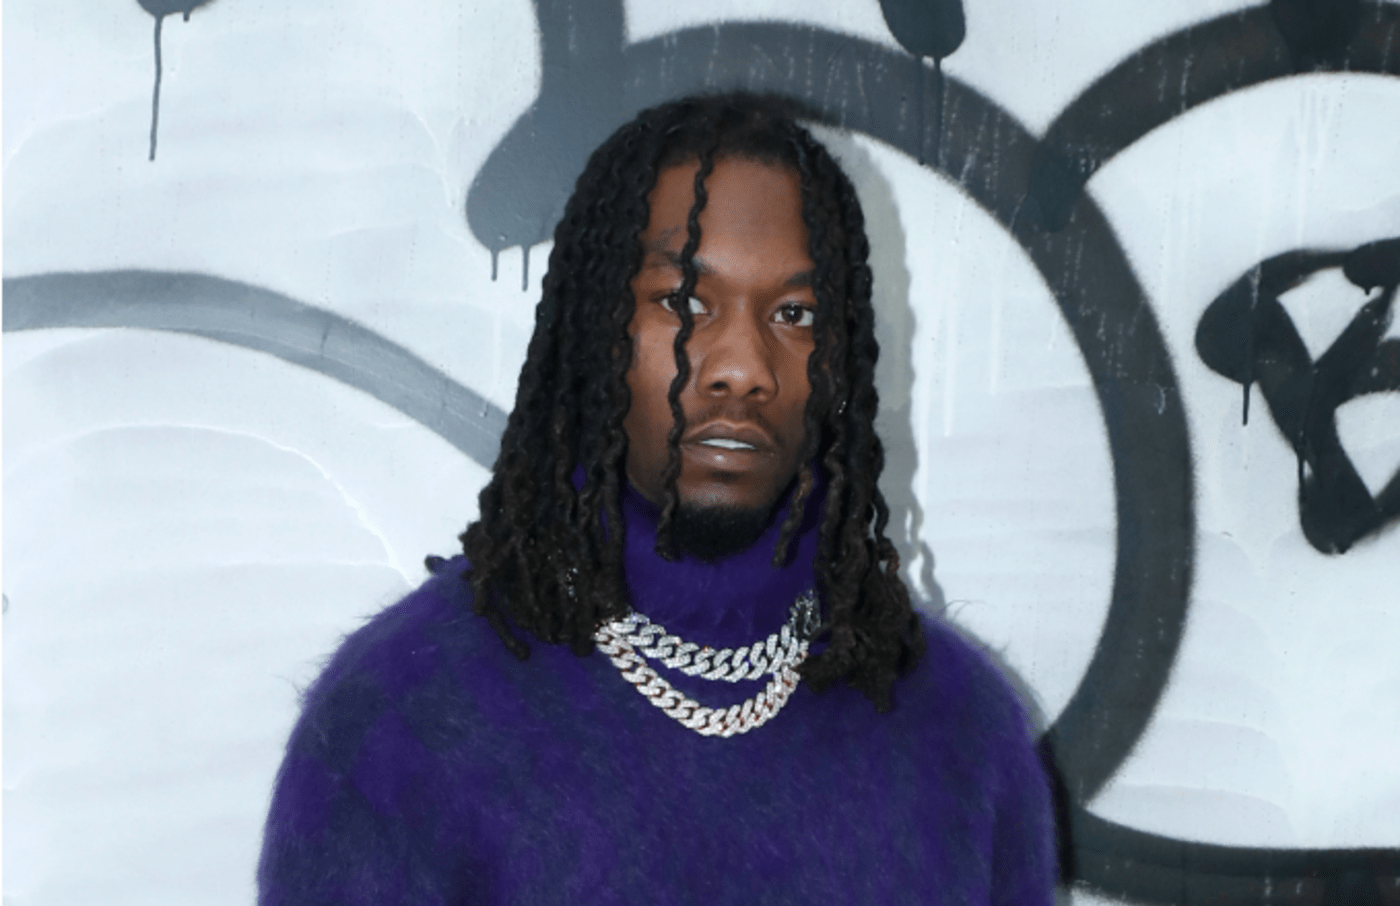 Rapper Offset attends the Louis Vuitton Menswear Fall/Winter 2019 2020 show